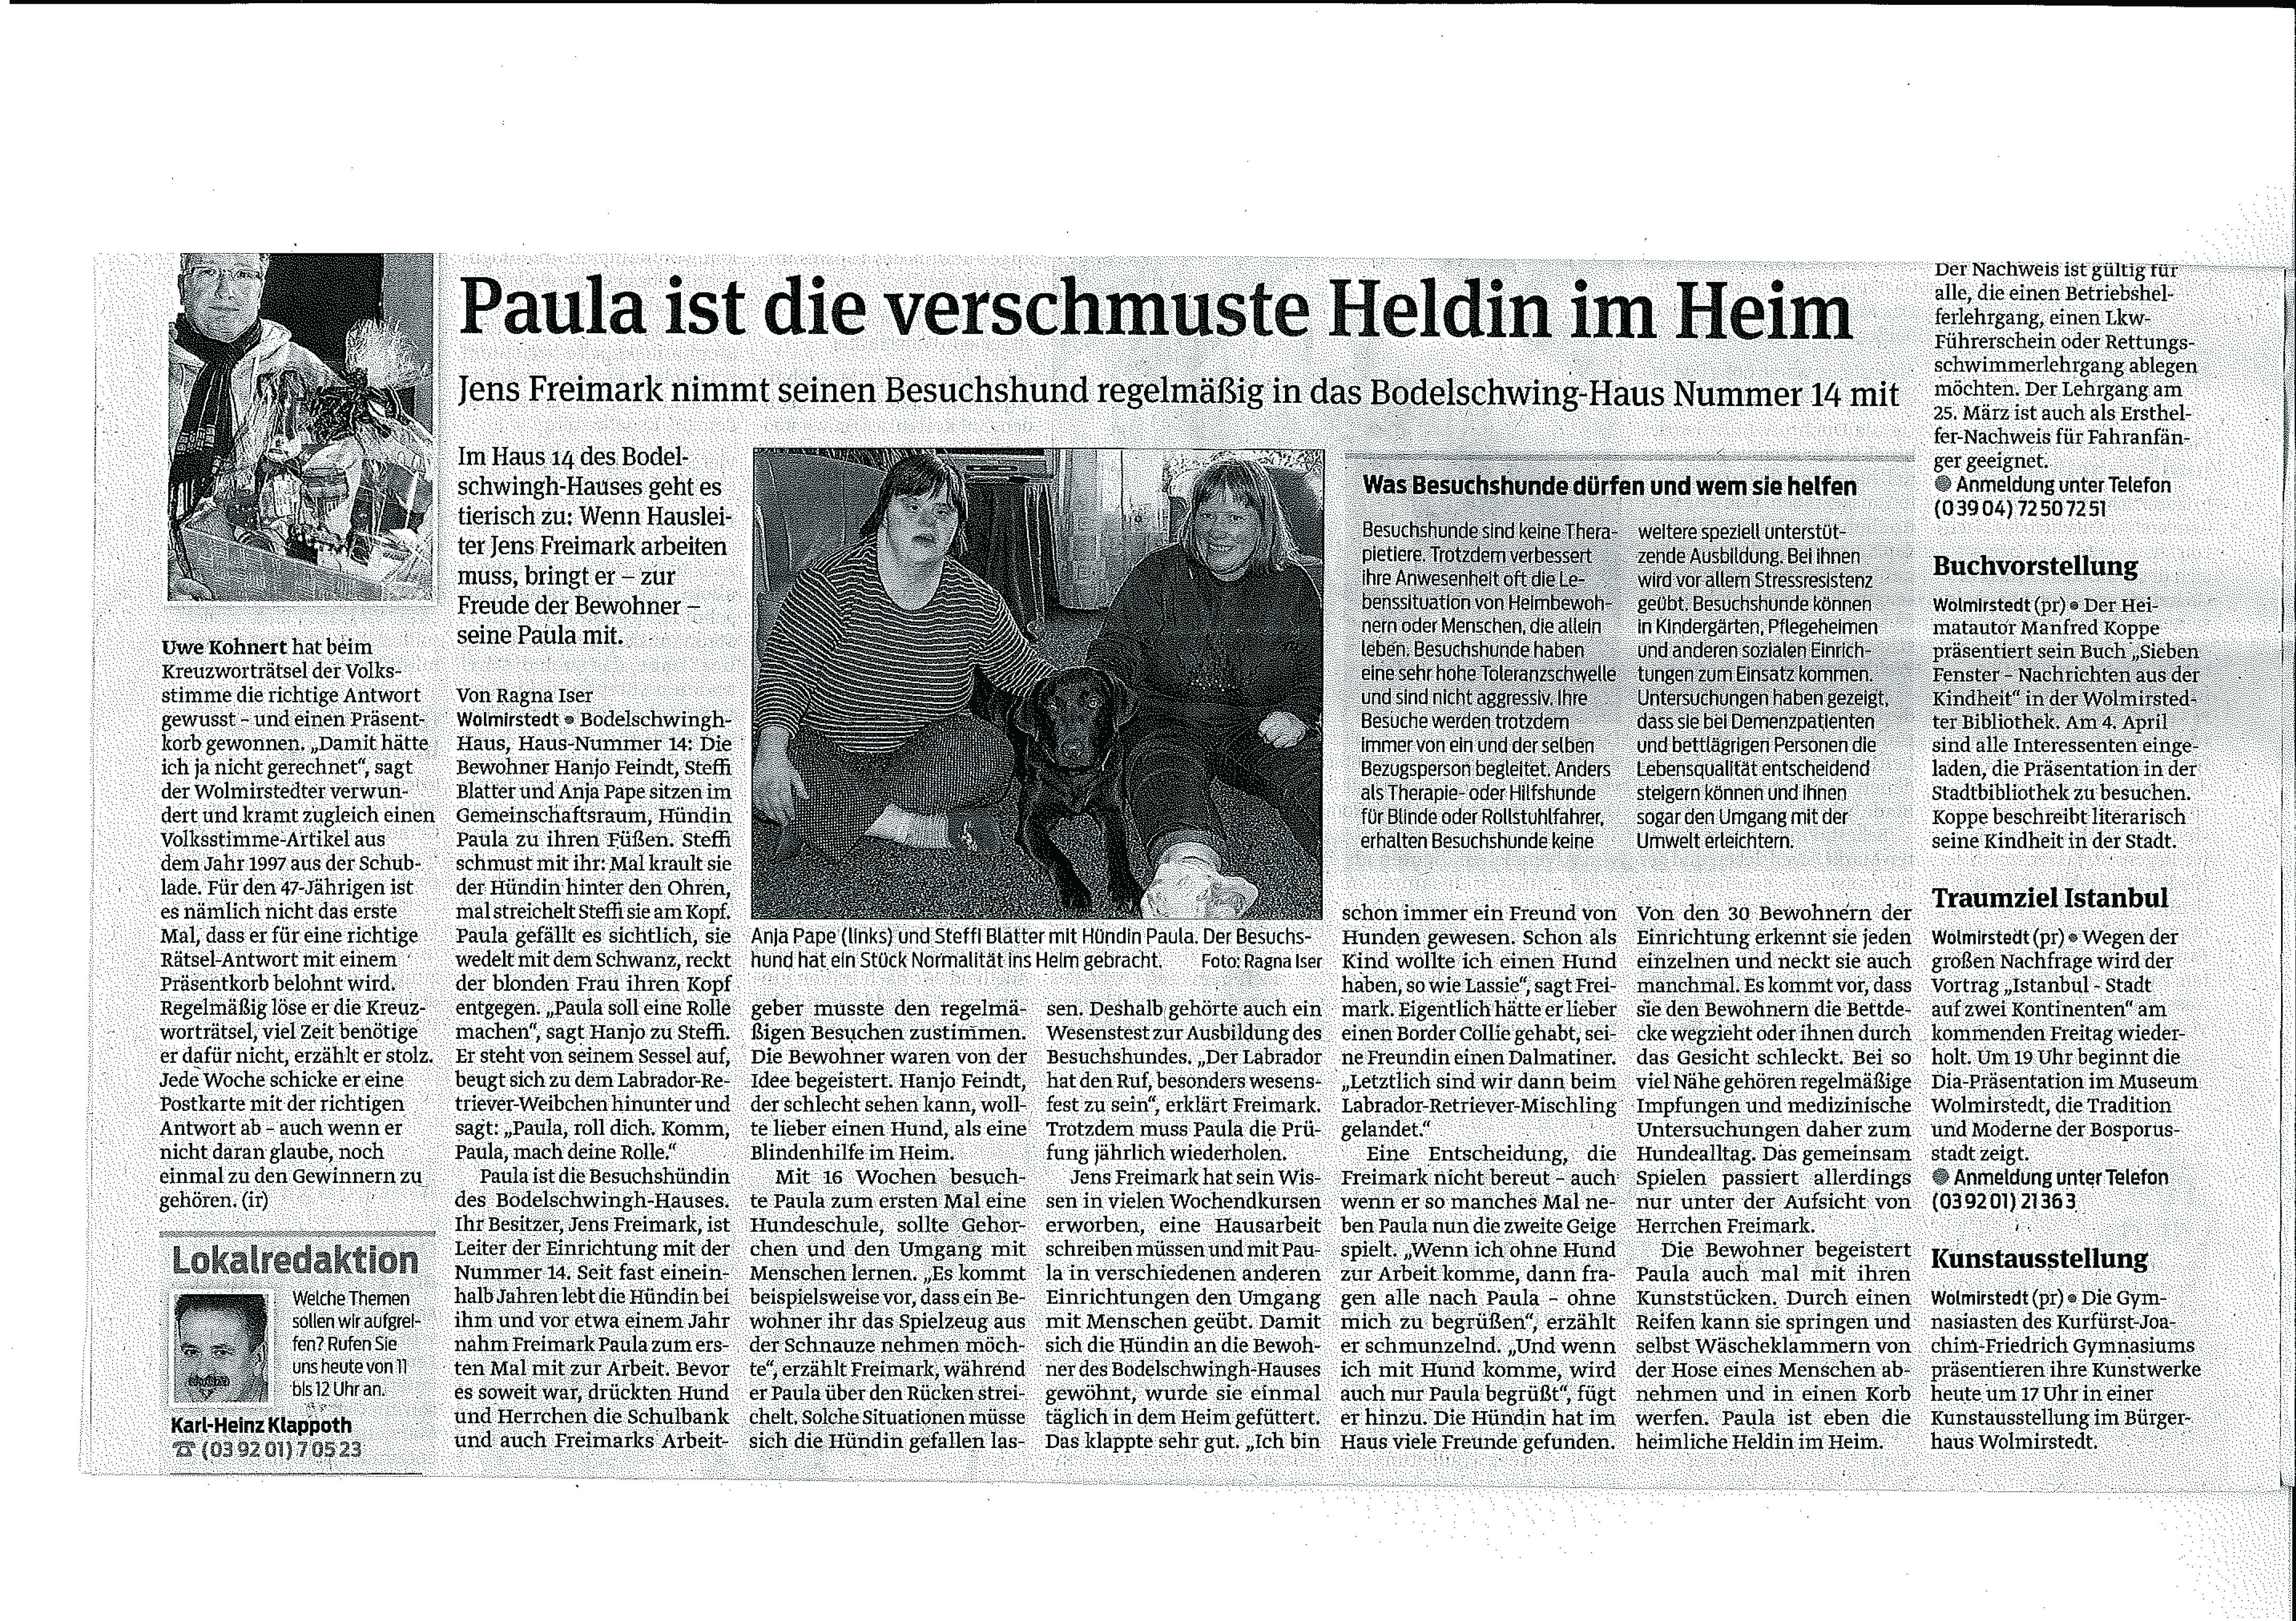 Paula wurde im TAZ ausgebildet und arbeitet jetzt im Bodelschwingh-Haus in Wolmirstedt